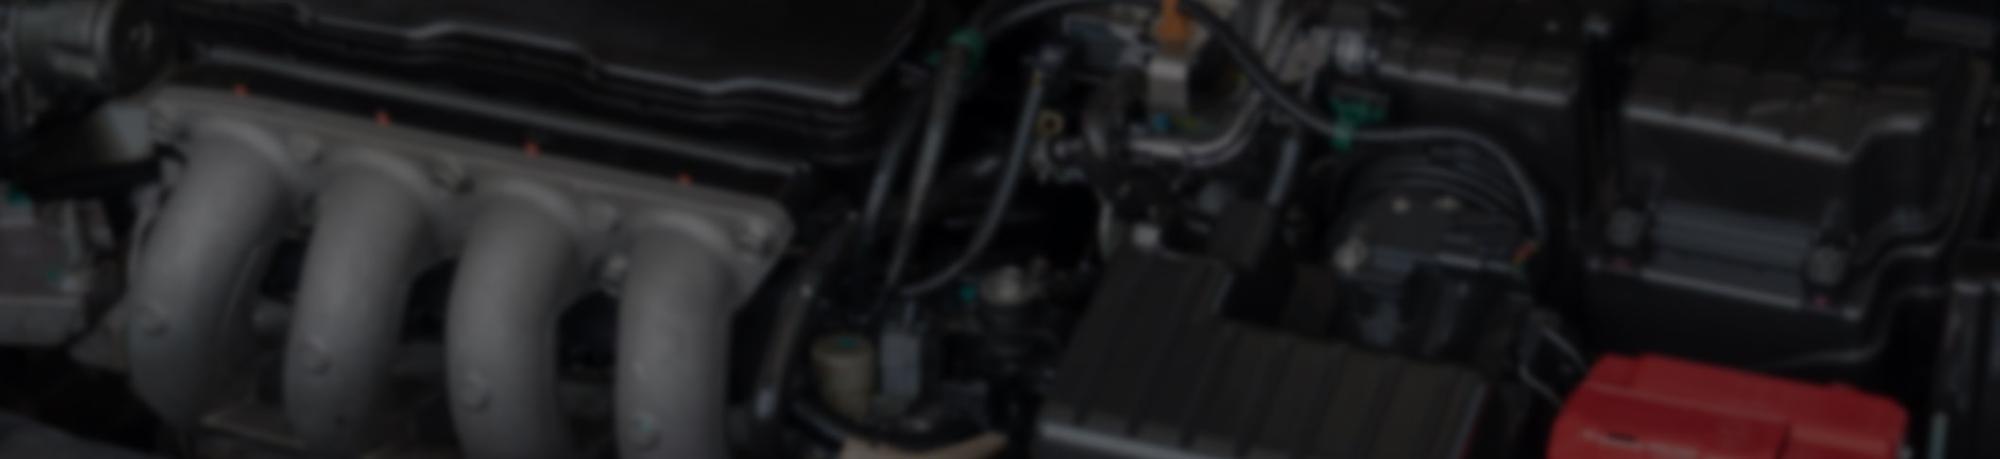 Engine Repair, Maintenance & Replacements in Waukesha